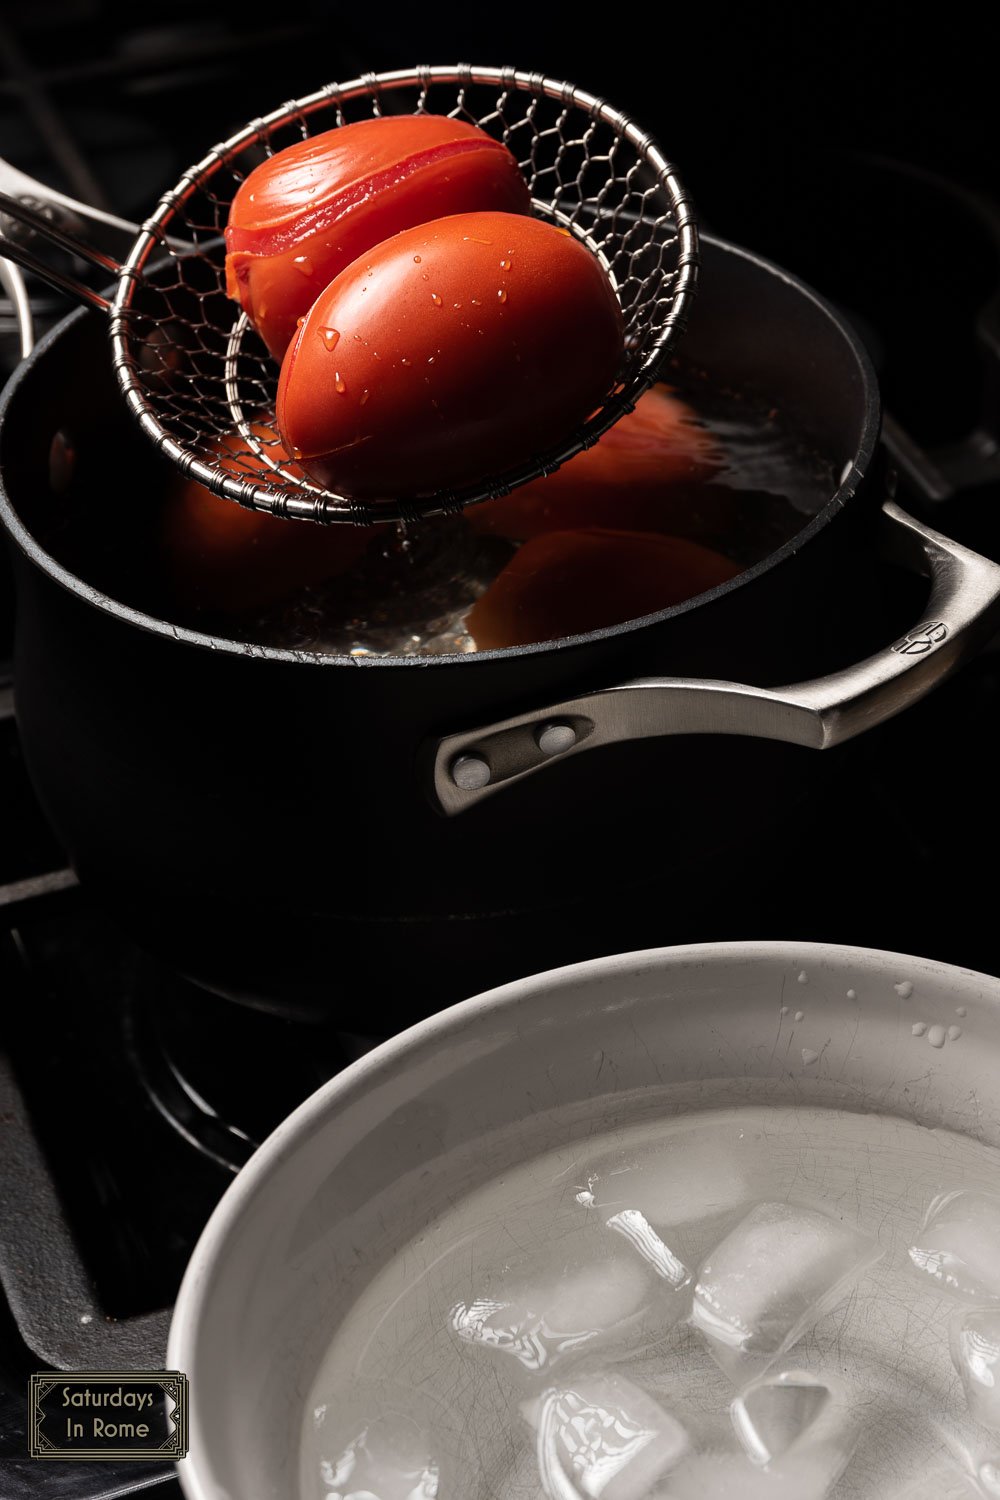 Tuscan Tomato Soup - Blanching